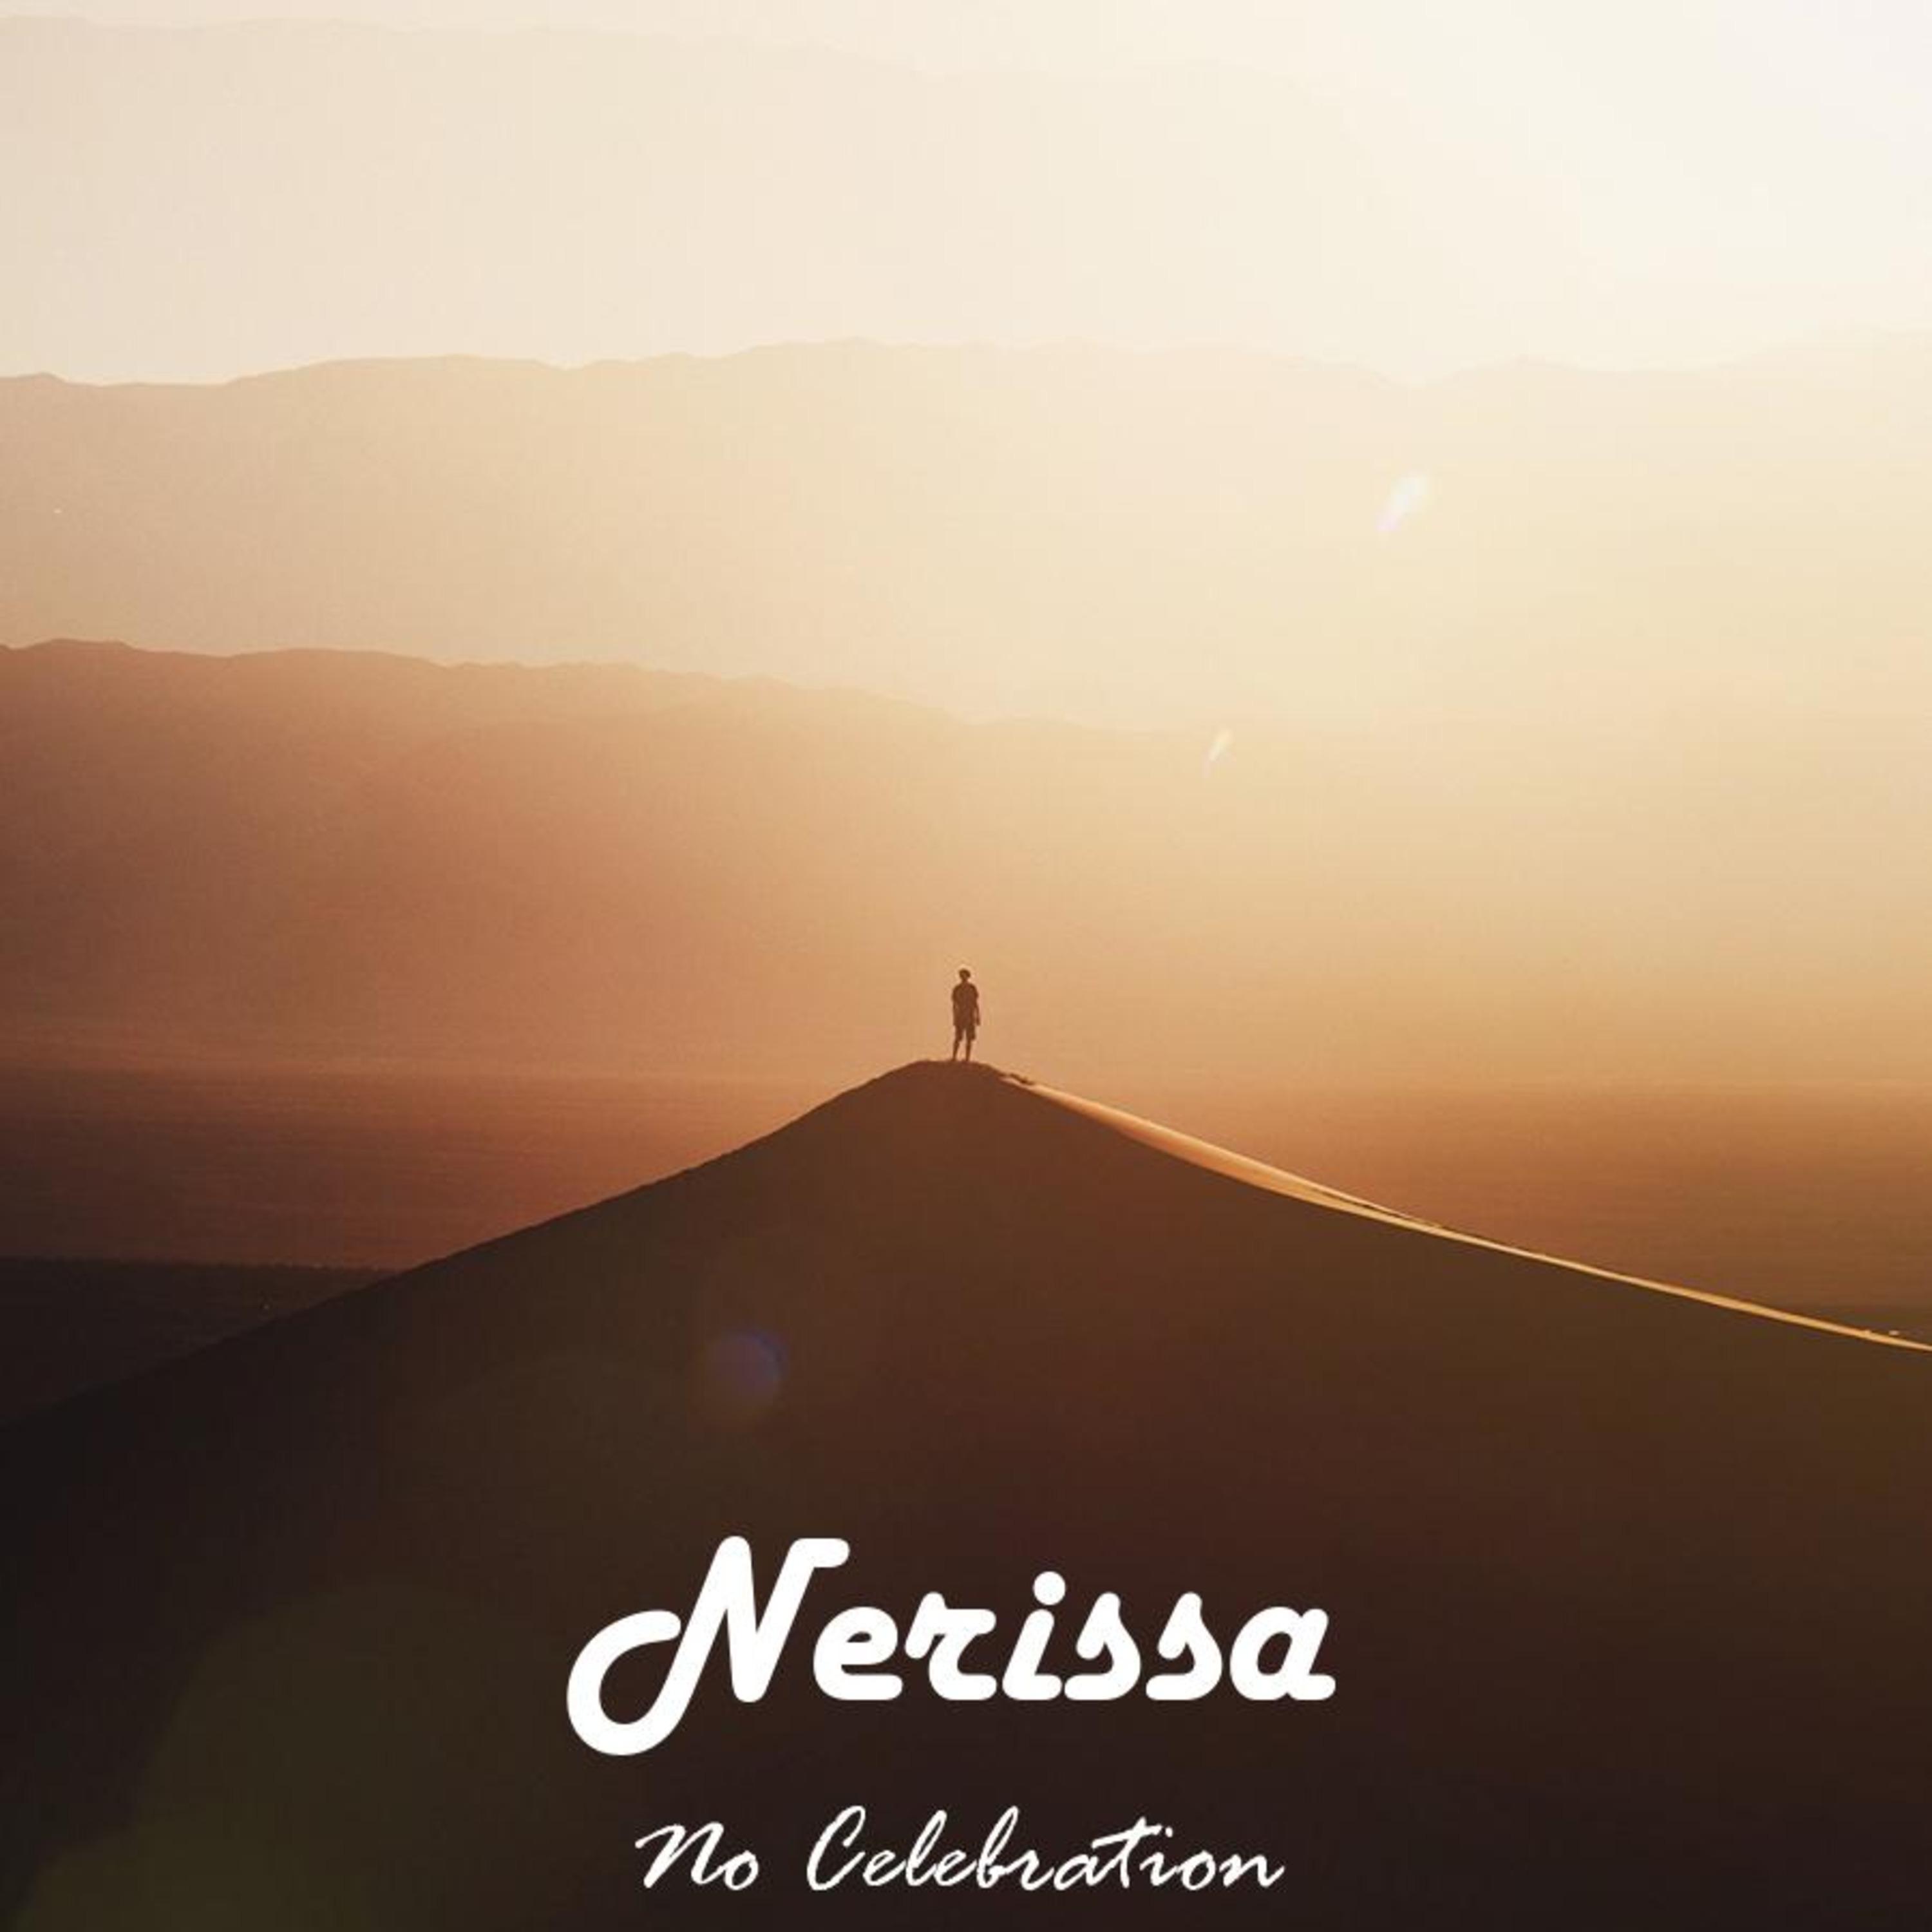 Nerissa - Goodbye and Chance